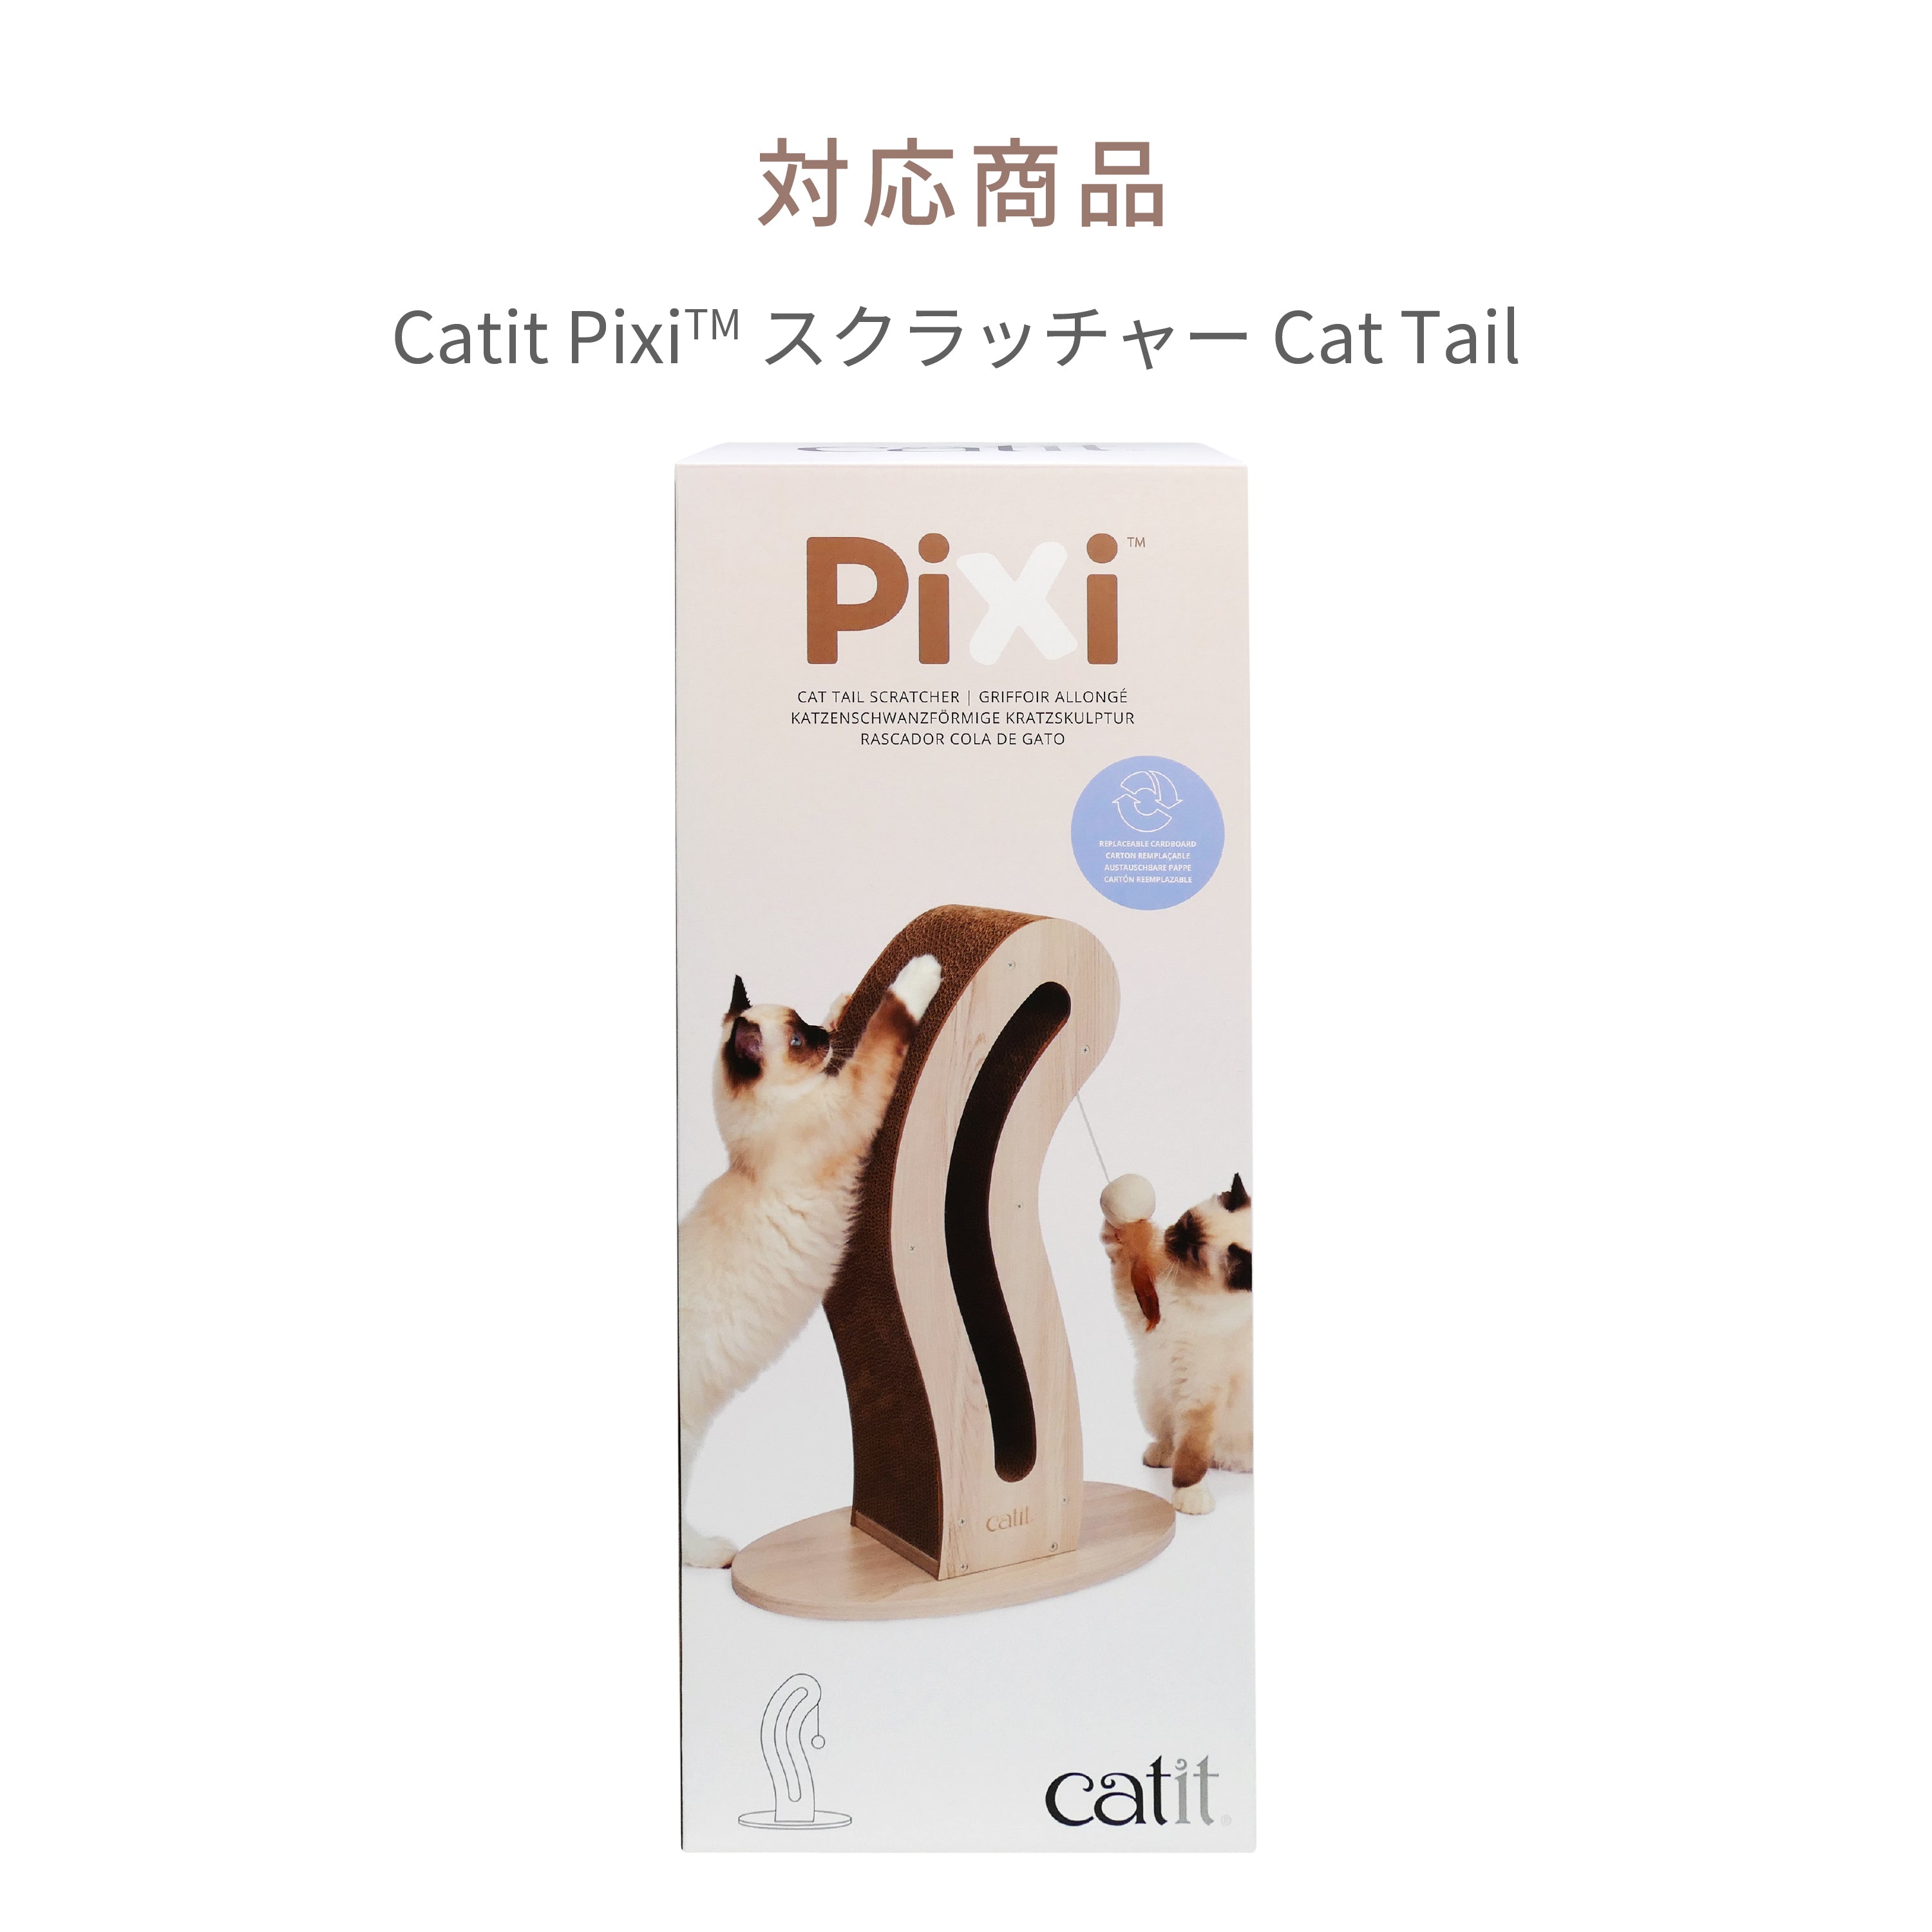 Catit Pixi スクラッチャーCat Tail 交換用